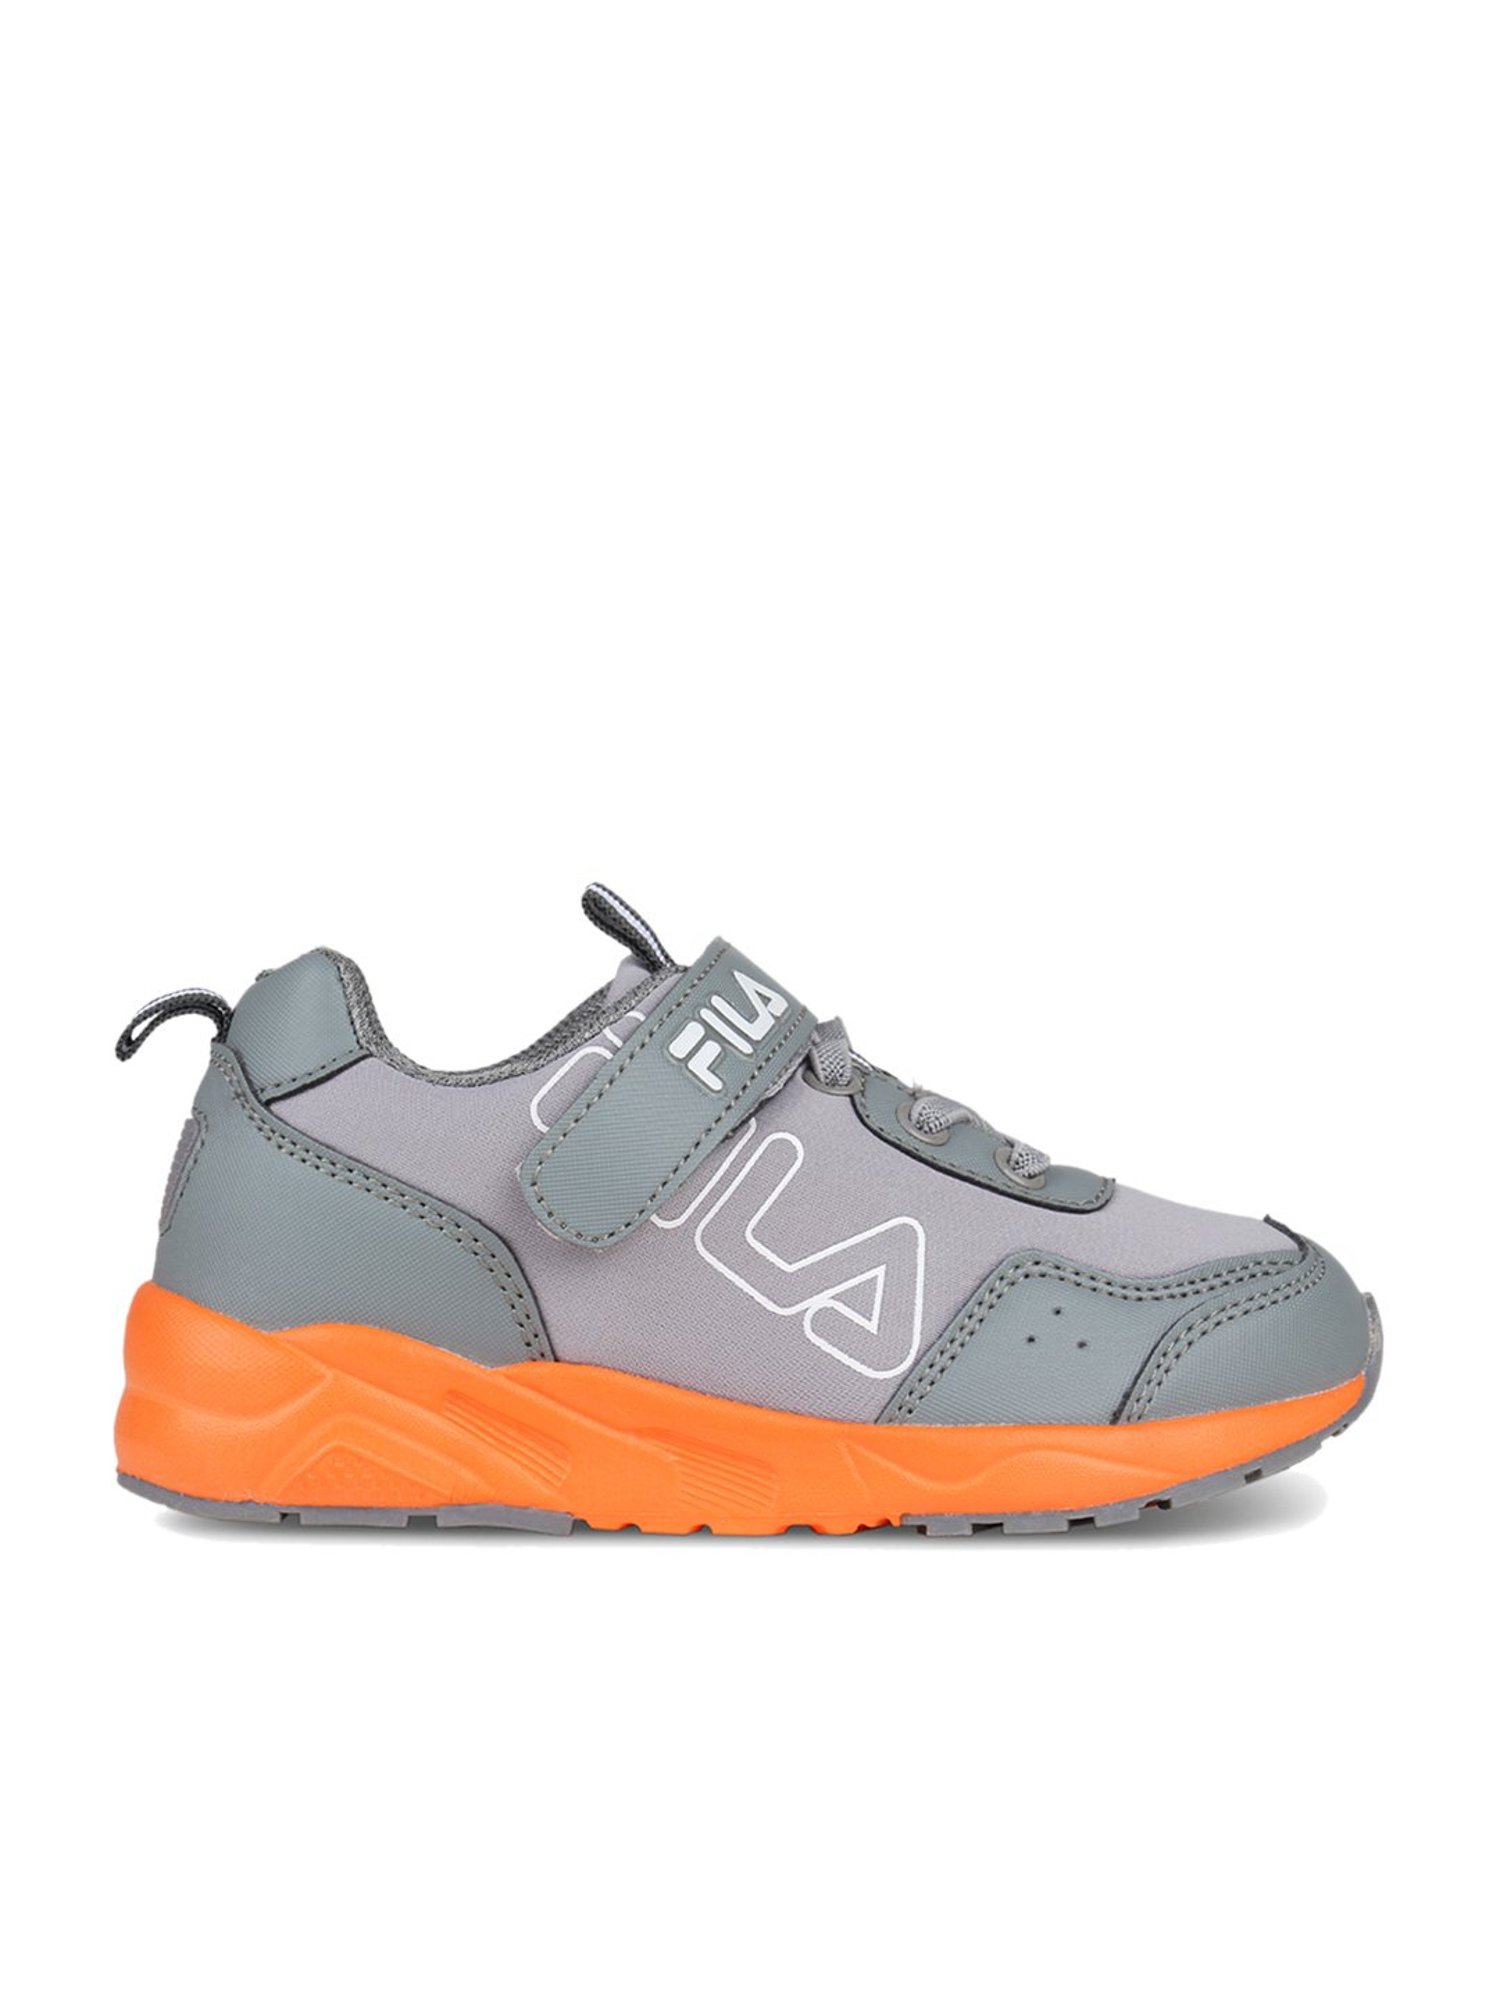 Fila Memory Deluxe Orange Mesh Running Shoes 91175 Men's size 5 | eBay